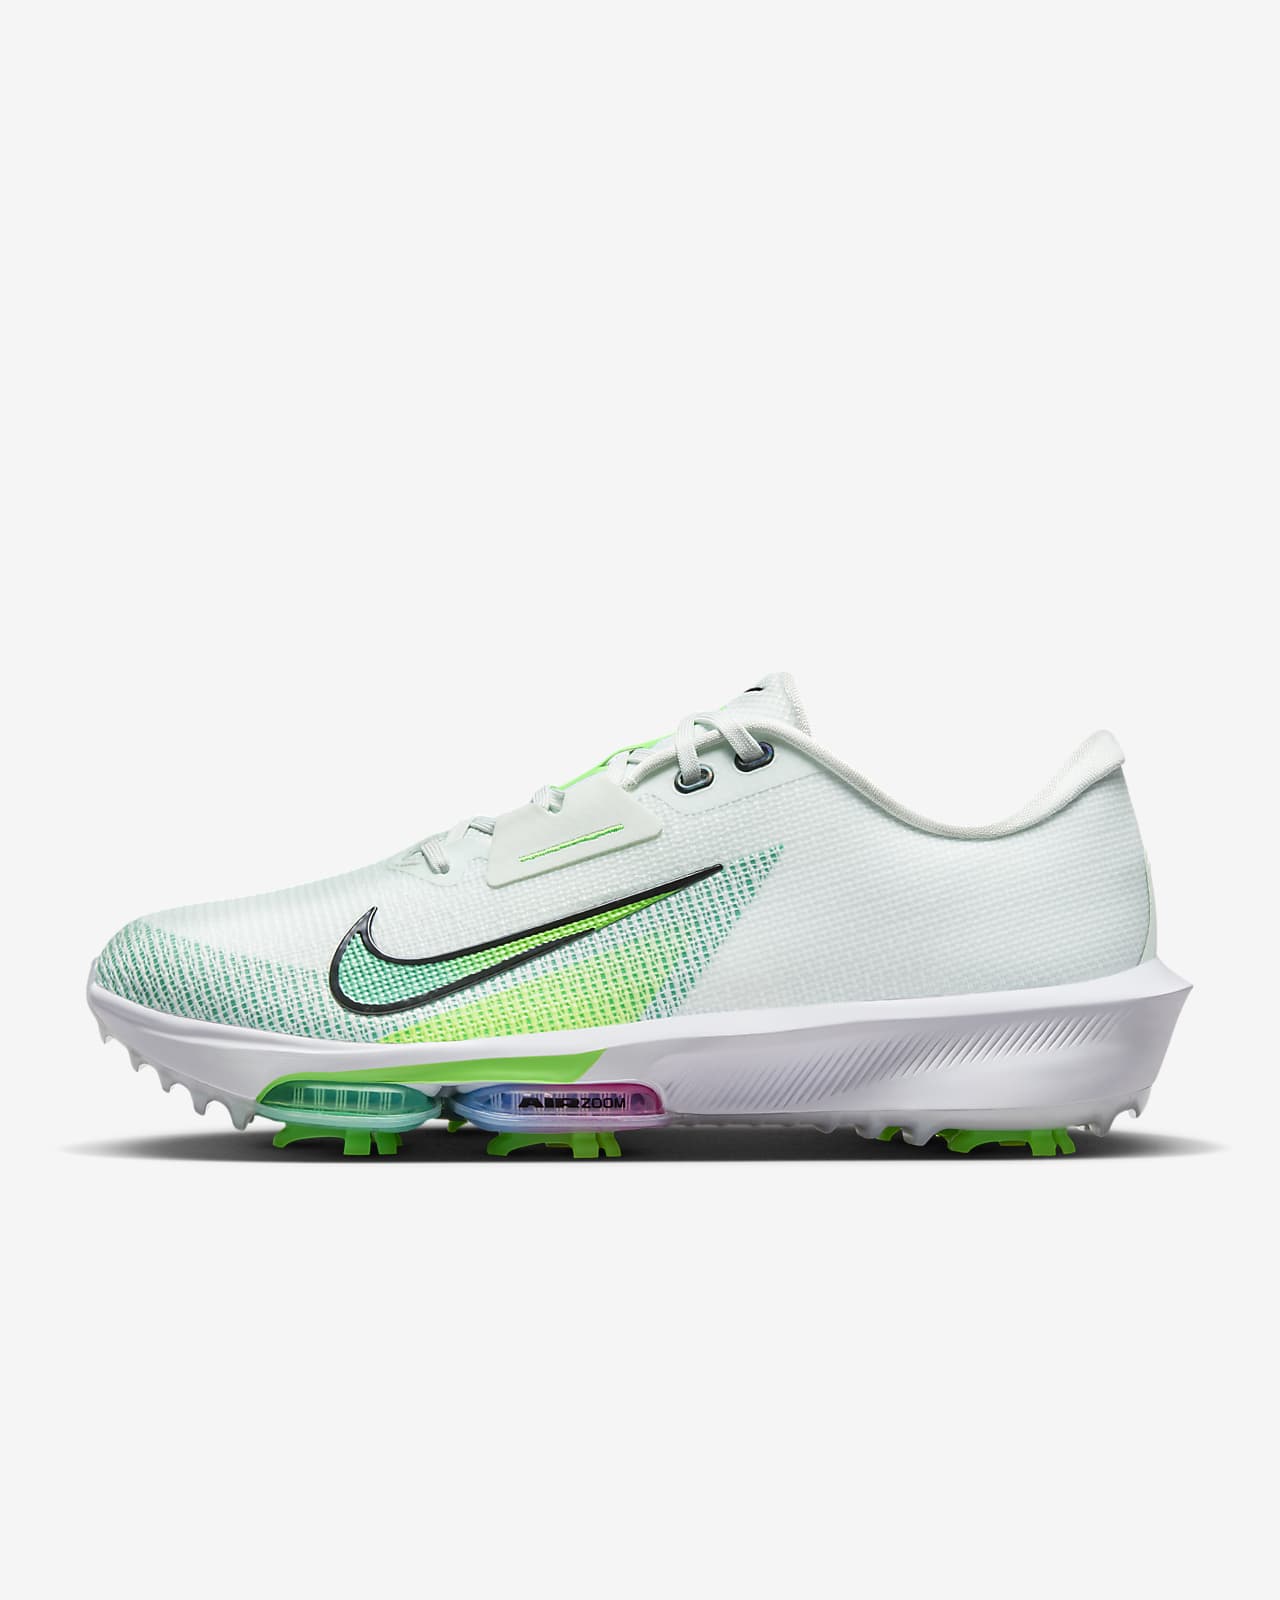 Παπούτσια γκολφ Nike Infinity Tour 2